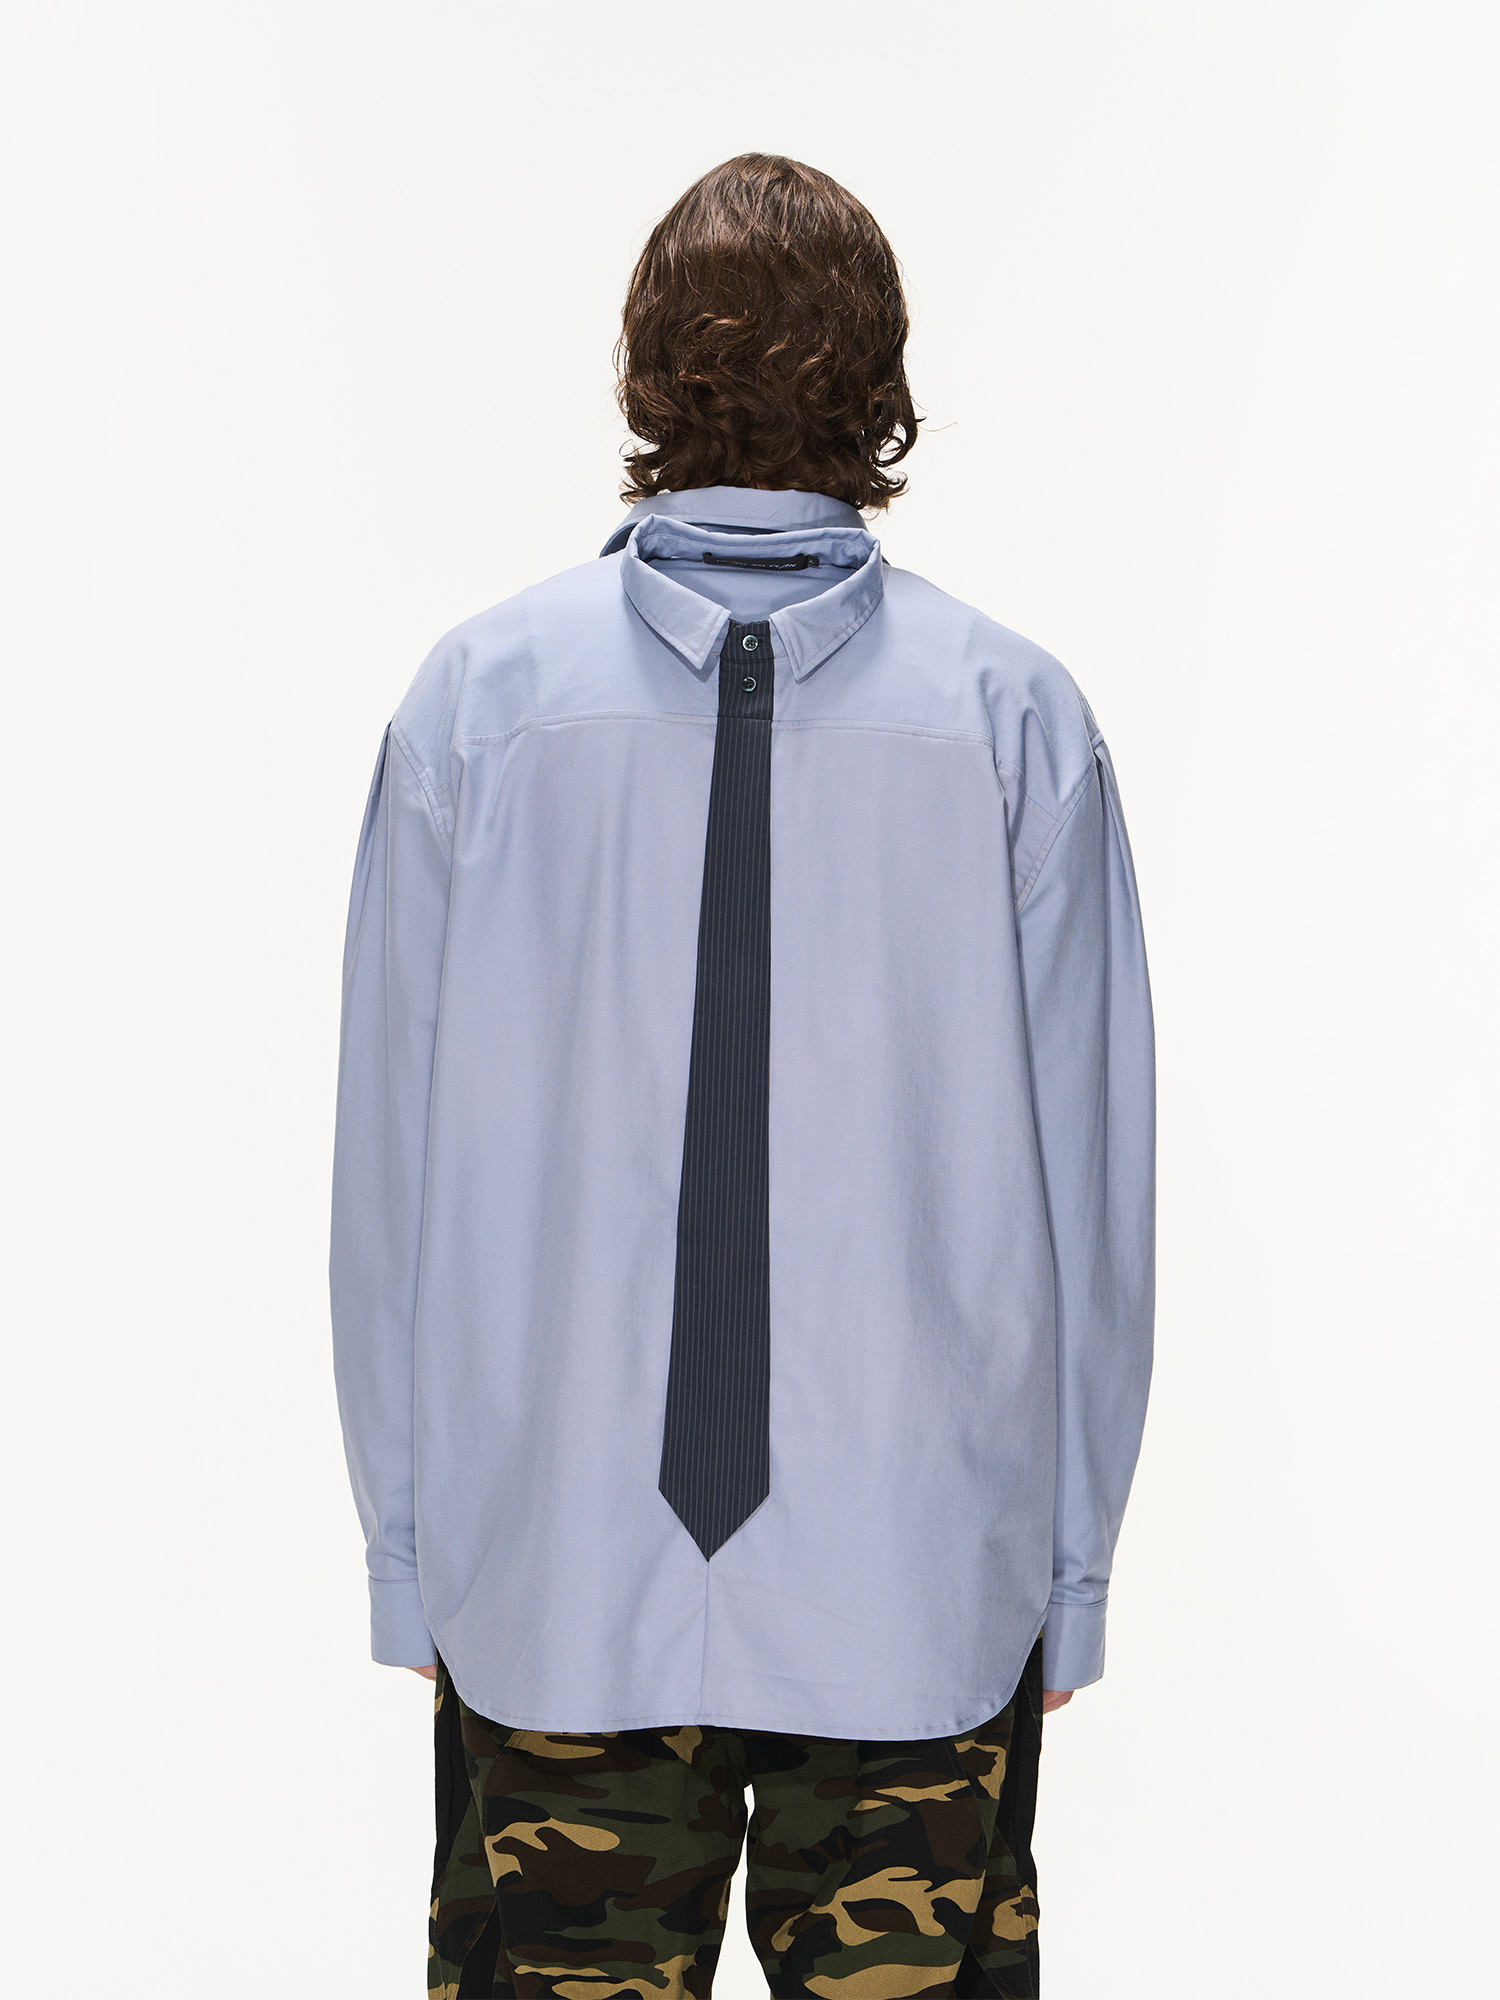 BLINDNOPLAN 23AW 双领口形态排扣宽松长袖衬衫秋季衬衣